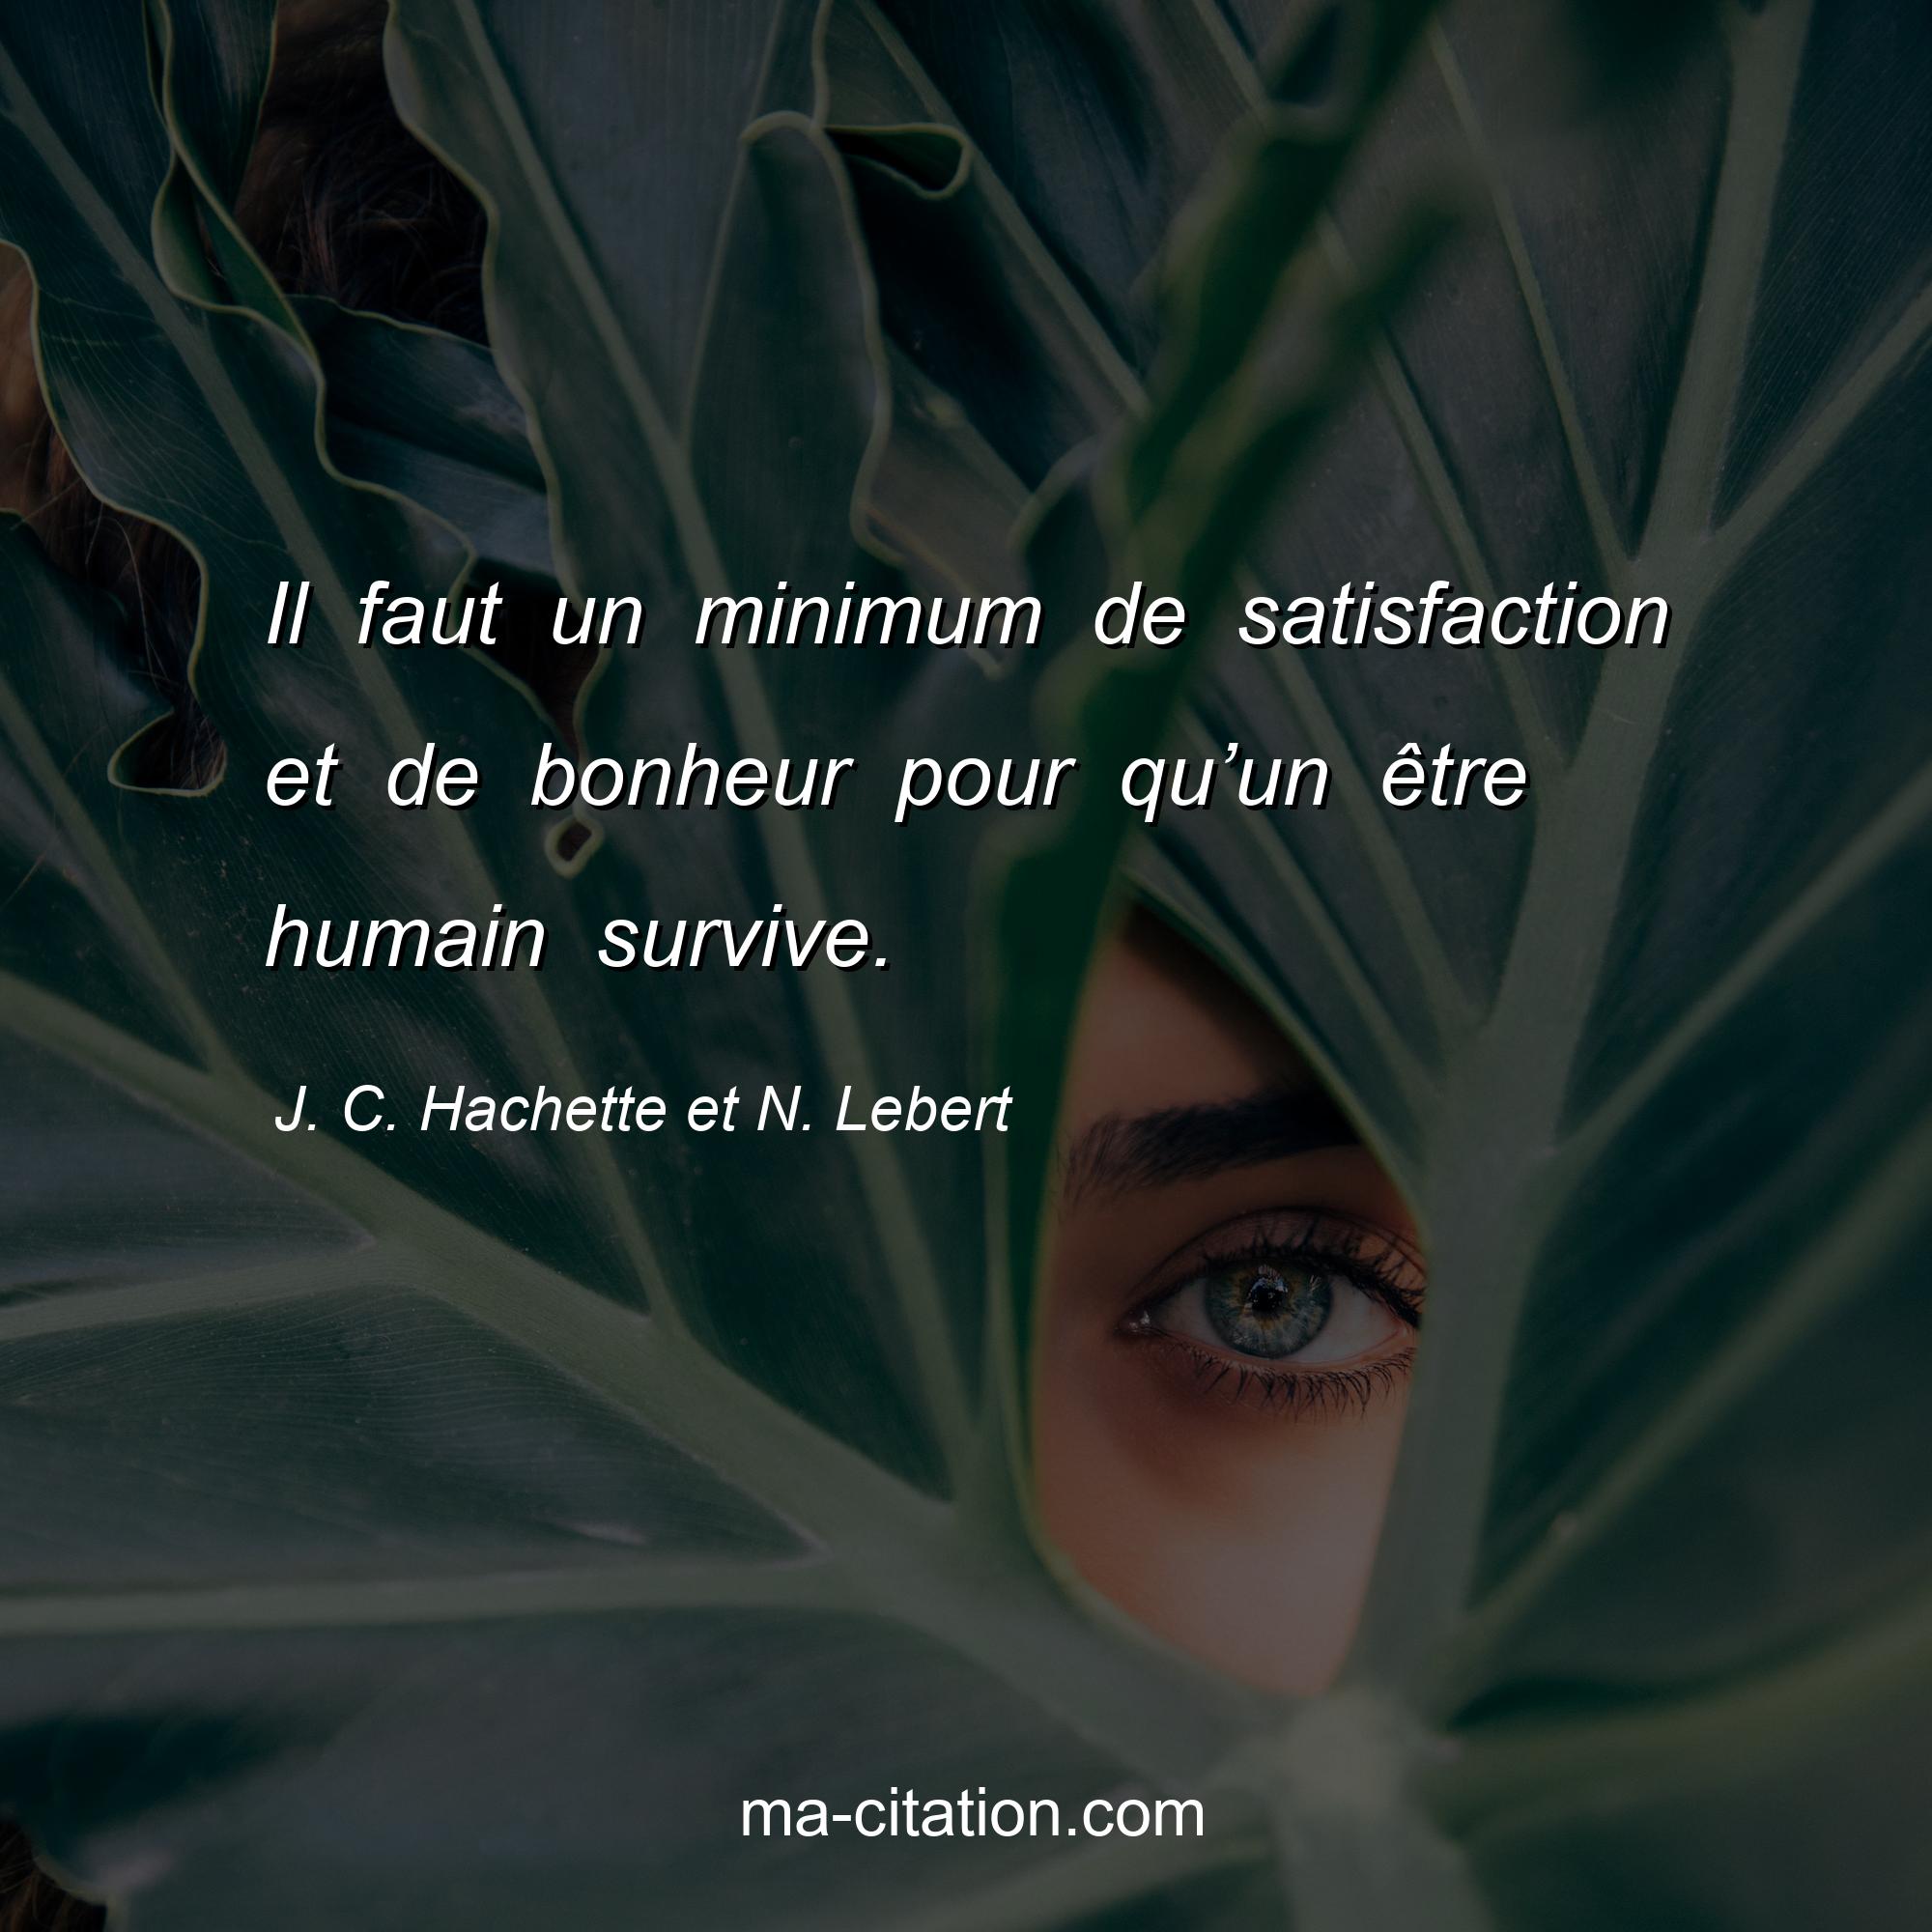 J. C. Hachette et N. Lebert : Il faut un minimum de satisfaction et de bonheur pour qu’un être humain survive.